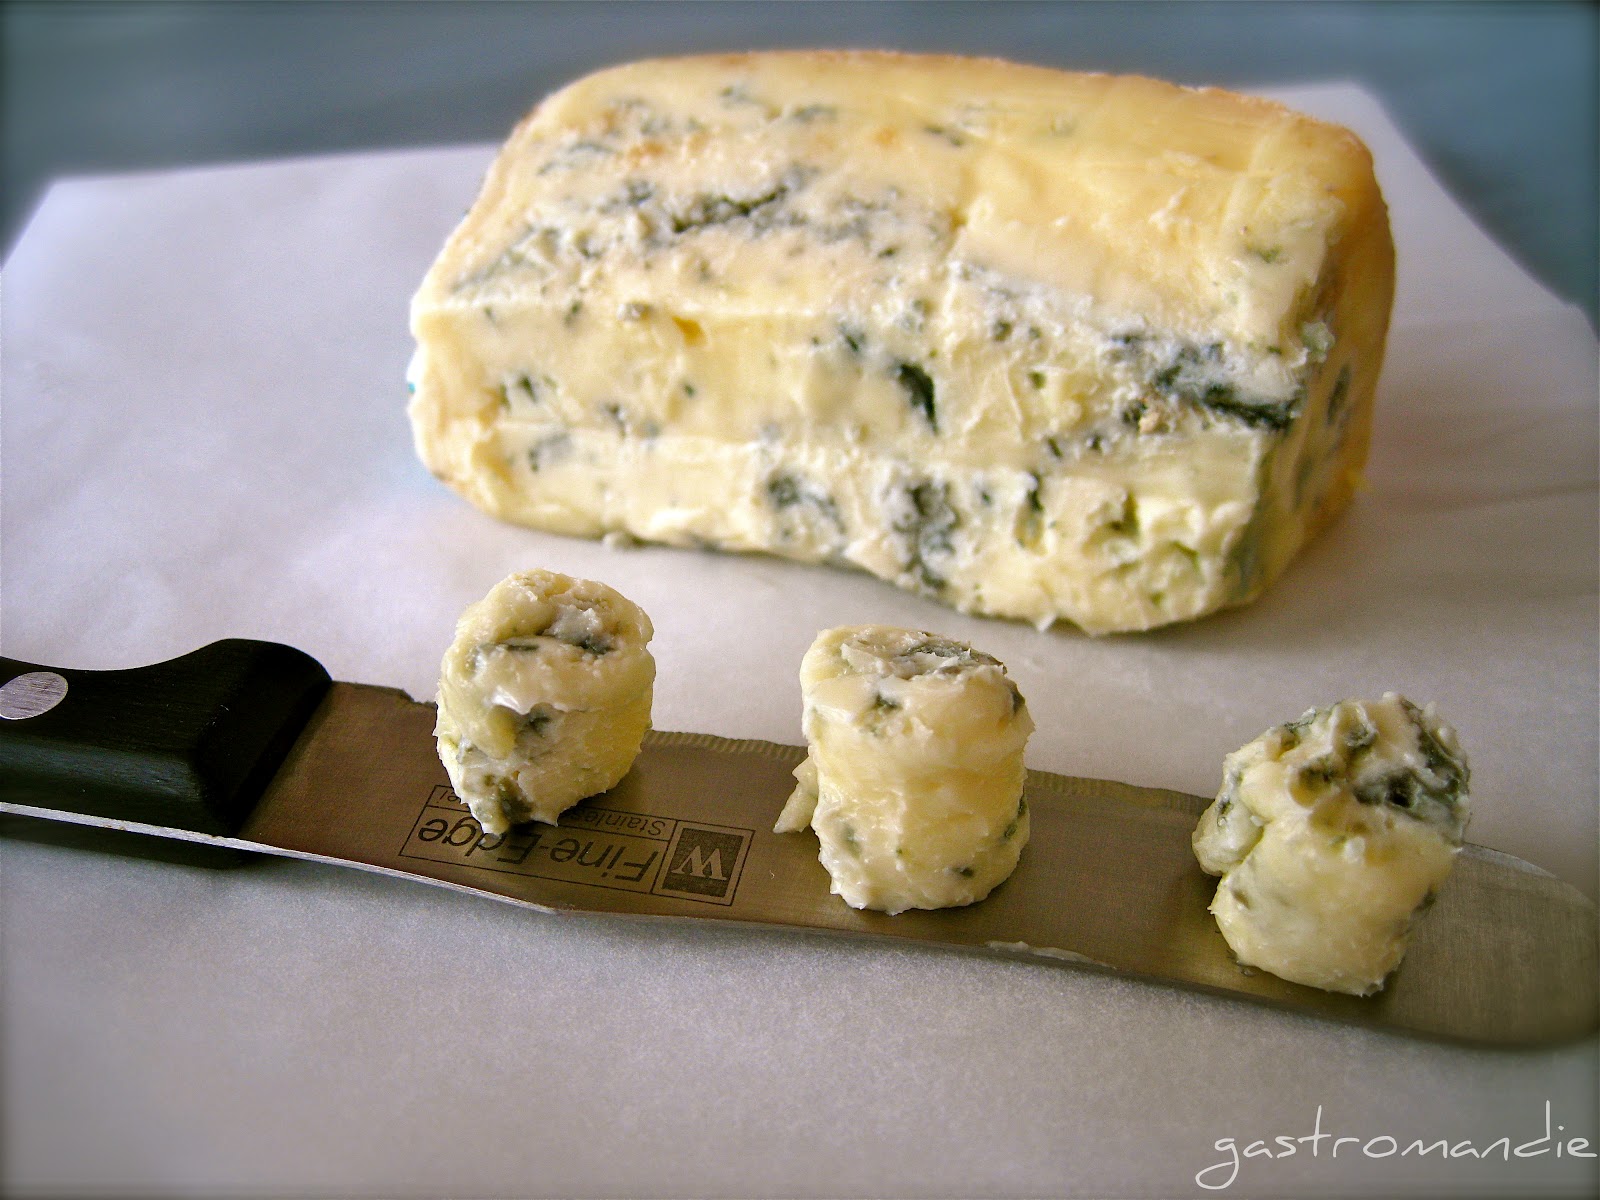 Δείτε πως παράγεται το διάσημο ιταλικό τυρί γκοργκοντζόλα (βίντεο)